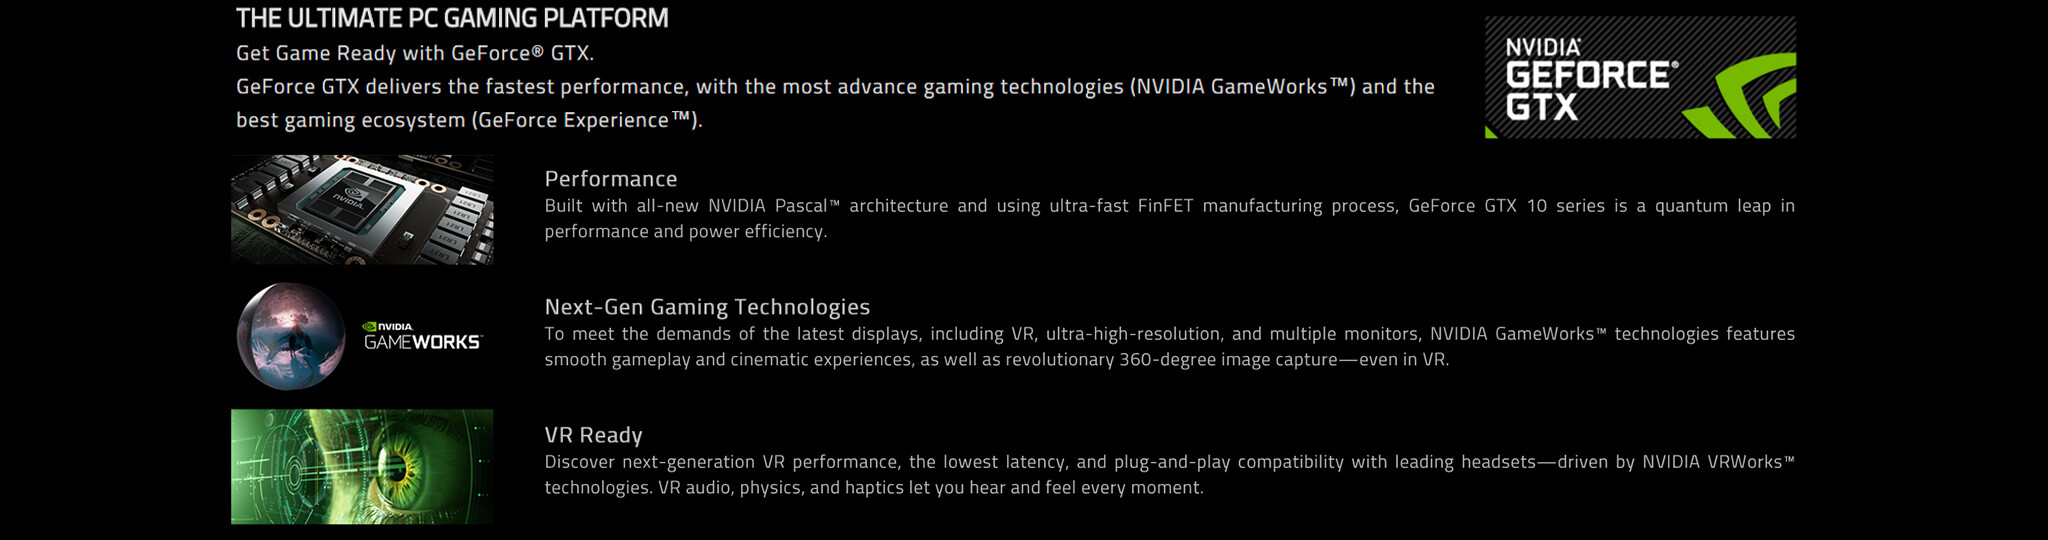 Gigabyte Geforce GTX 1060 G1 Gaming Gv-N1060G1GAMING-6Gd REV2 Graphics  Cards Graphic Cards GV-N1060G1GAM-6GD R2